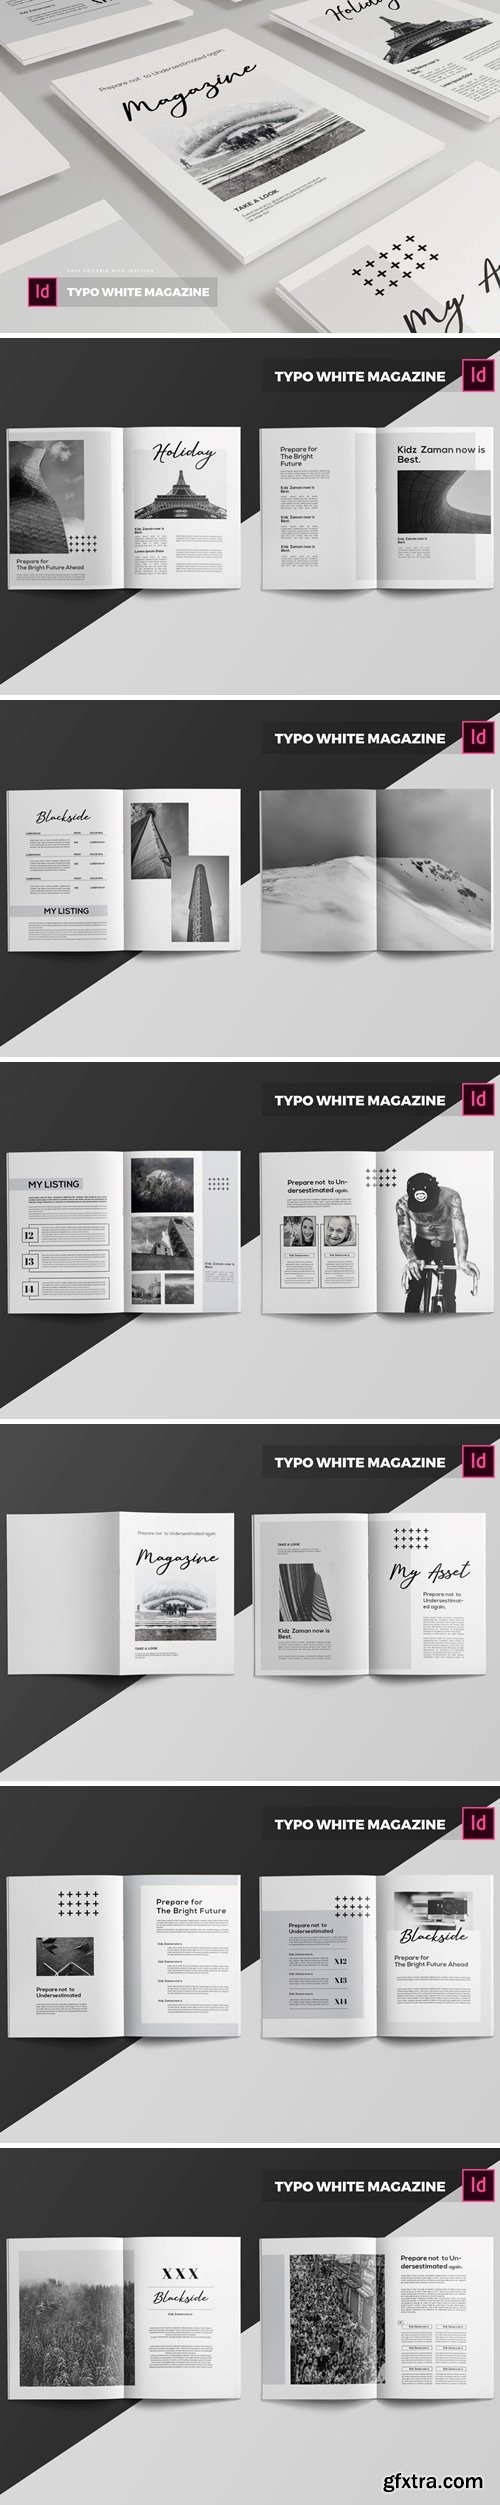 Typo White | Magazine Template